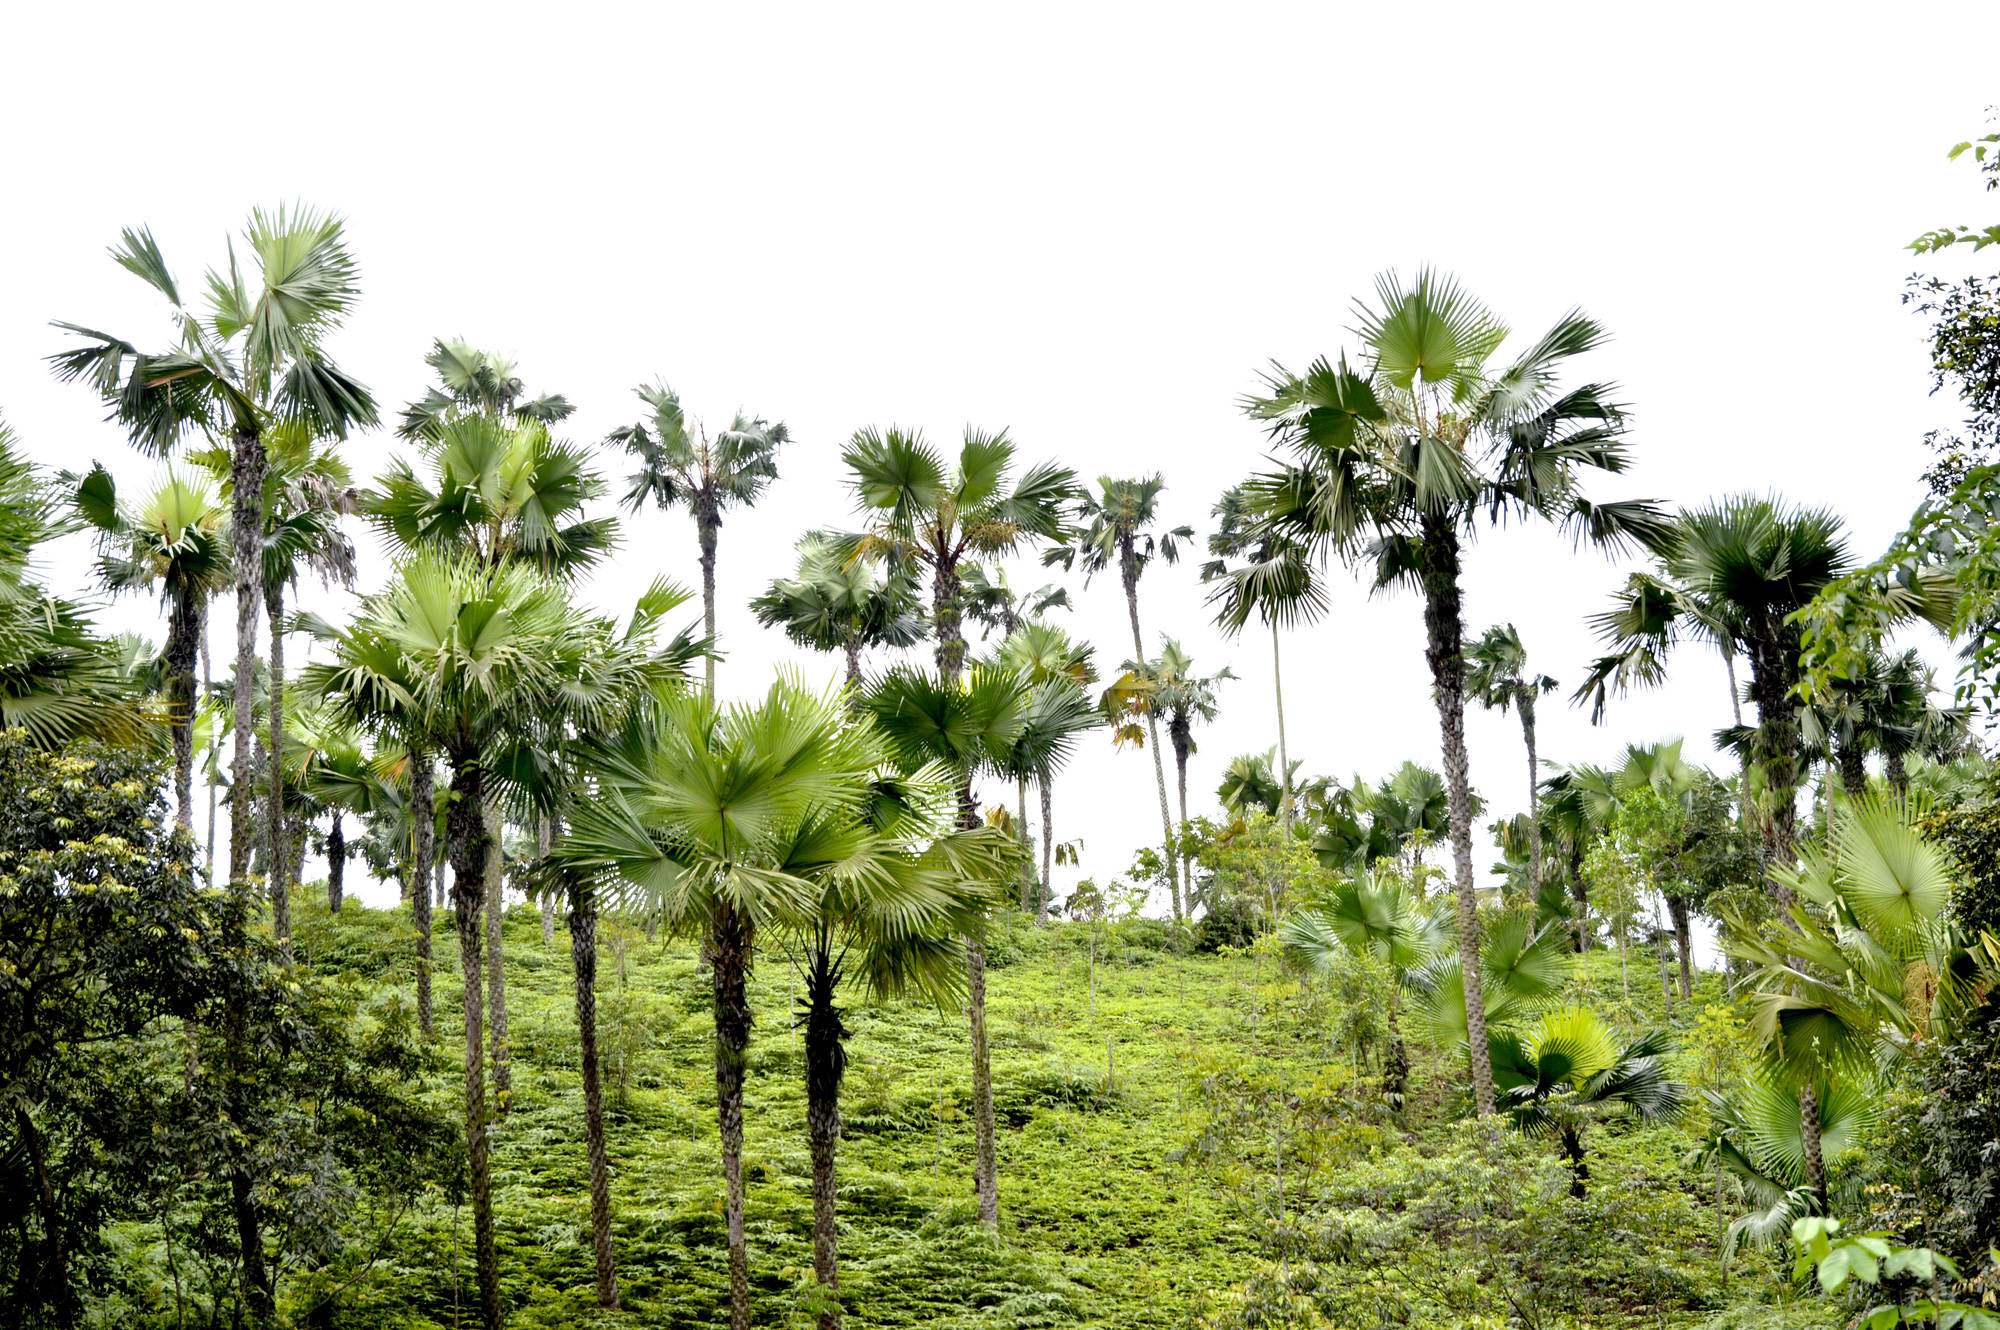 Tán lá cọ: Đến với bức ảnh này, bạn sẽ được khám phá vẻ đẹp của cây cọ Việt Nam cùng những tán lá xanh ngát. Không chỉ là một loại thực vật, cây cọ còn mang một giá trị văn hóa lớn đối với người dân ở đây. Hãy tìm hiểu thêm về nó qua bức ảnh tuyệt đẹp này.